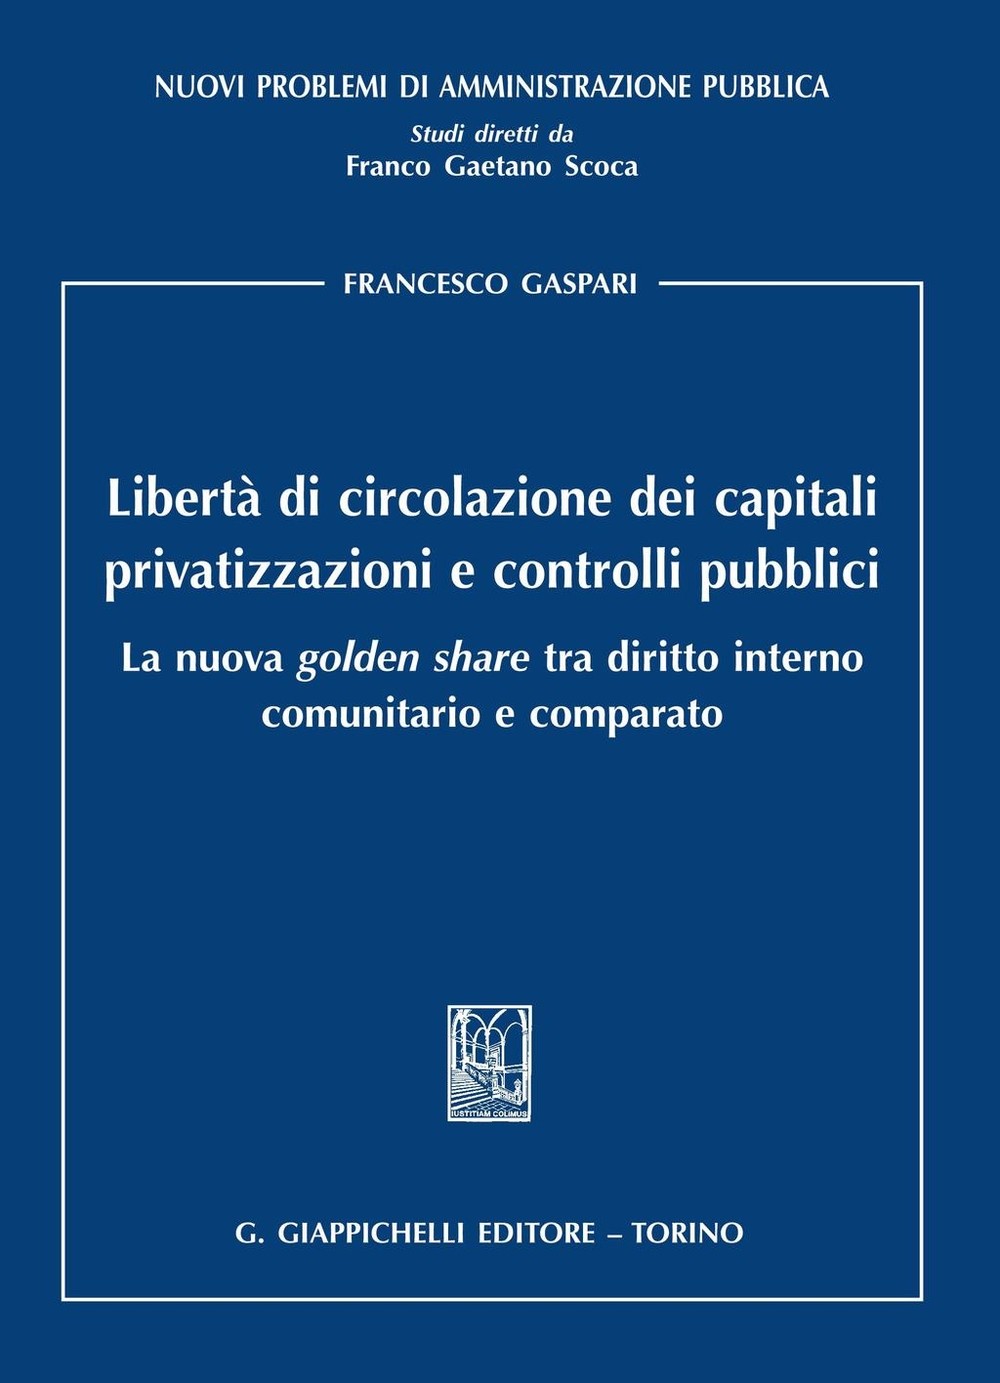 Liberta' di circolazione dei capitali, privatizzazioni e controlli pubblici - Librerie.coop